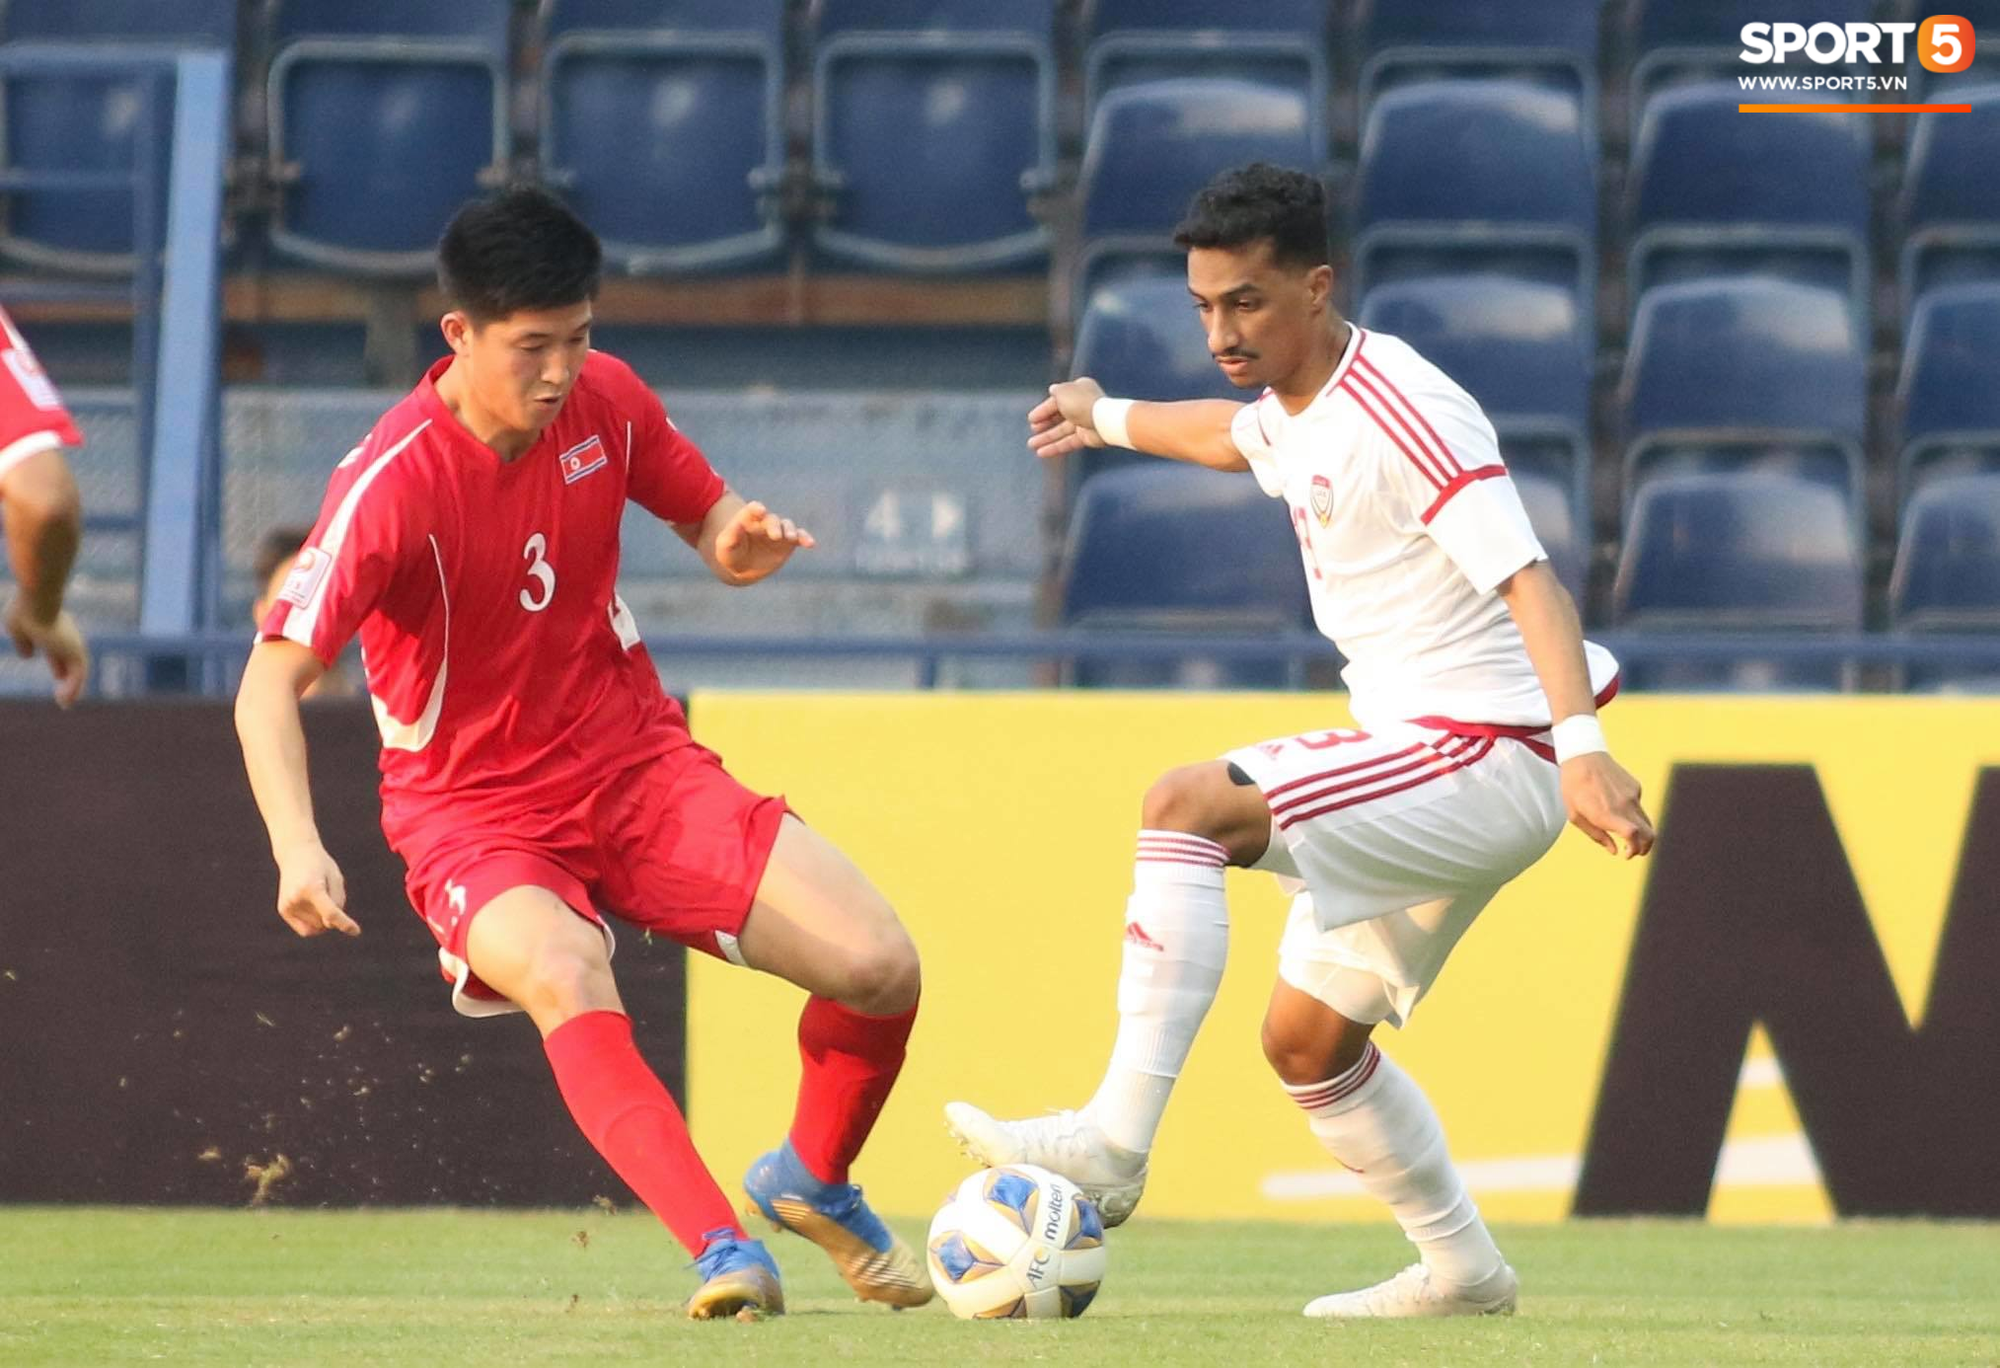 [Bảng D - VCK U23 châu Á] U23 UAE 2-0 U23 Triều Tiên: Thắng dễ Triều Tiên, UAE đẩy Việt Nam vào cửa tử - Ảnh 8.